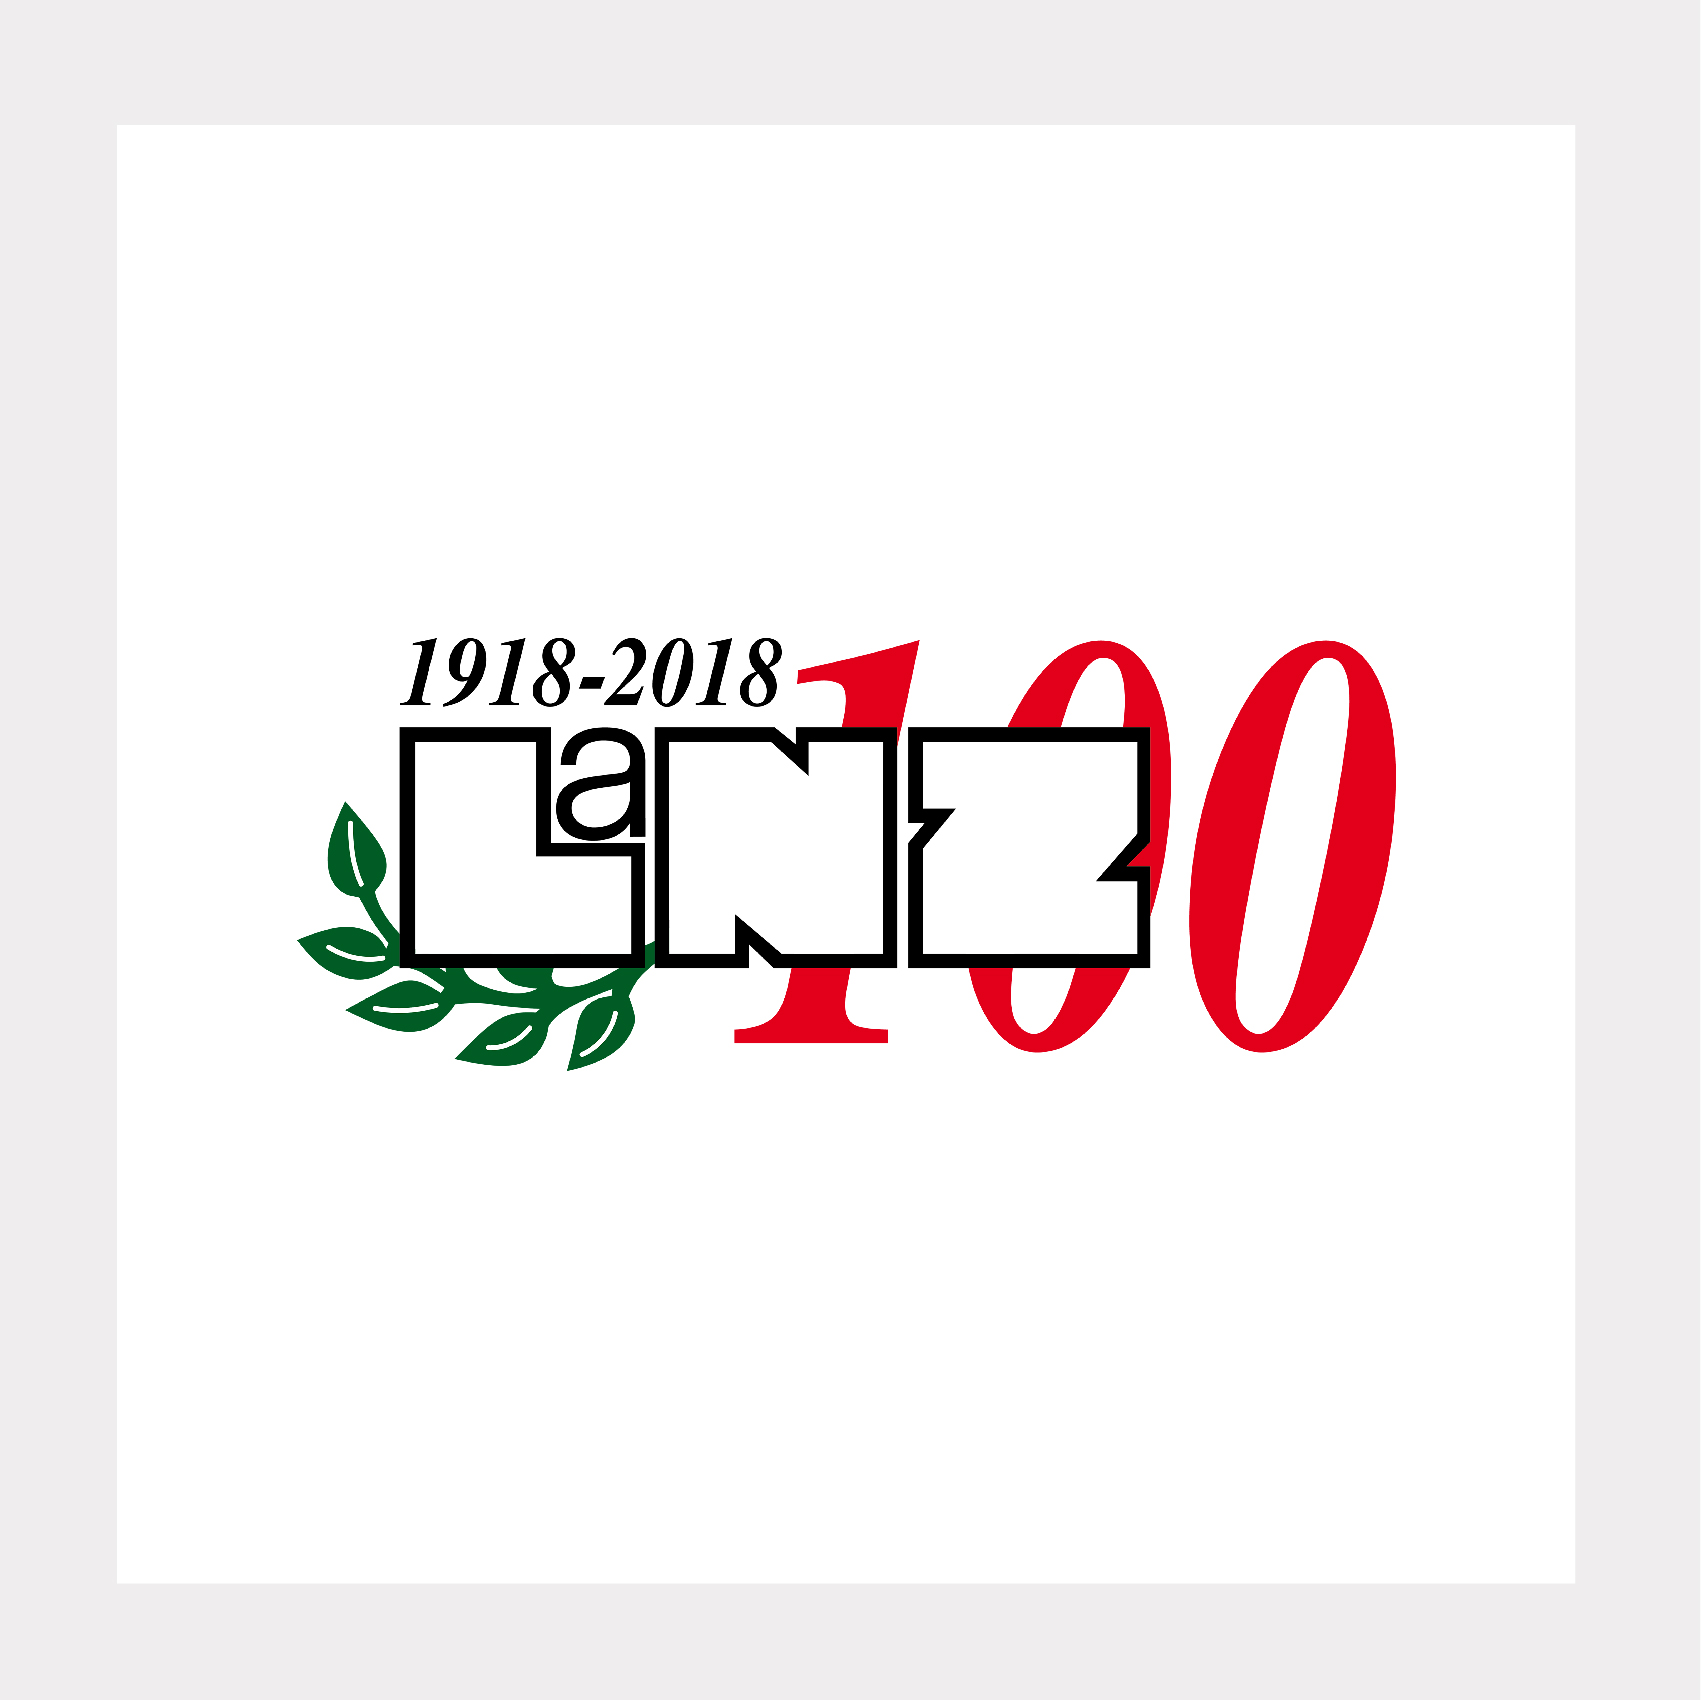 Im Jahr 2018 feierte LANZ das 100-jährige Jubiläum.